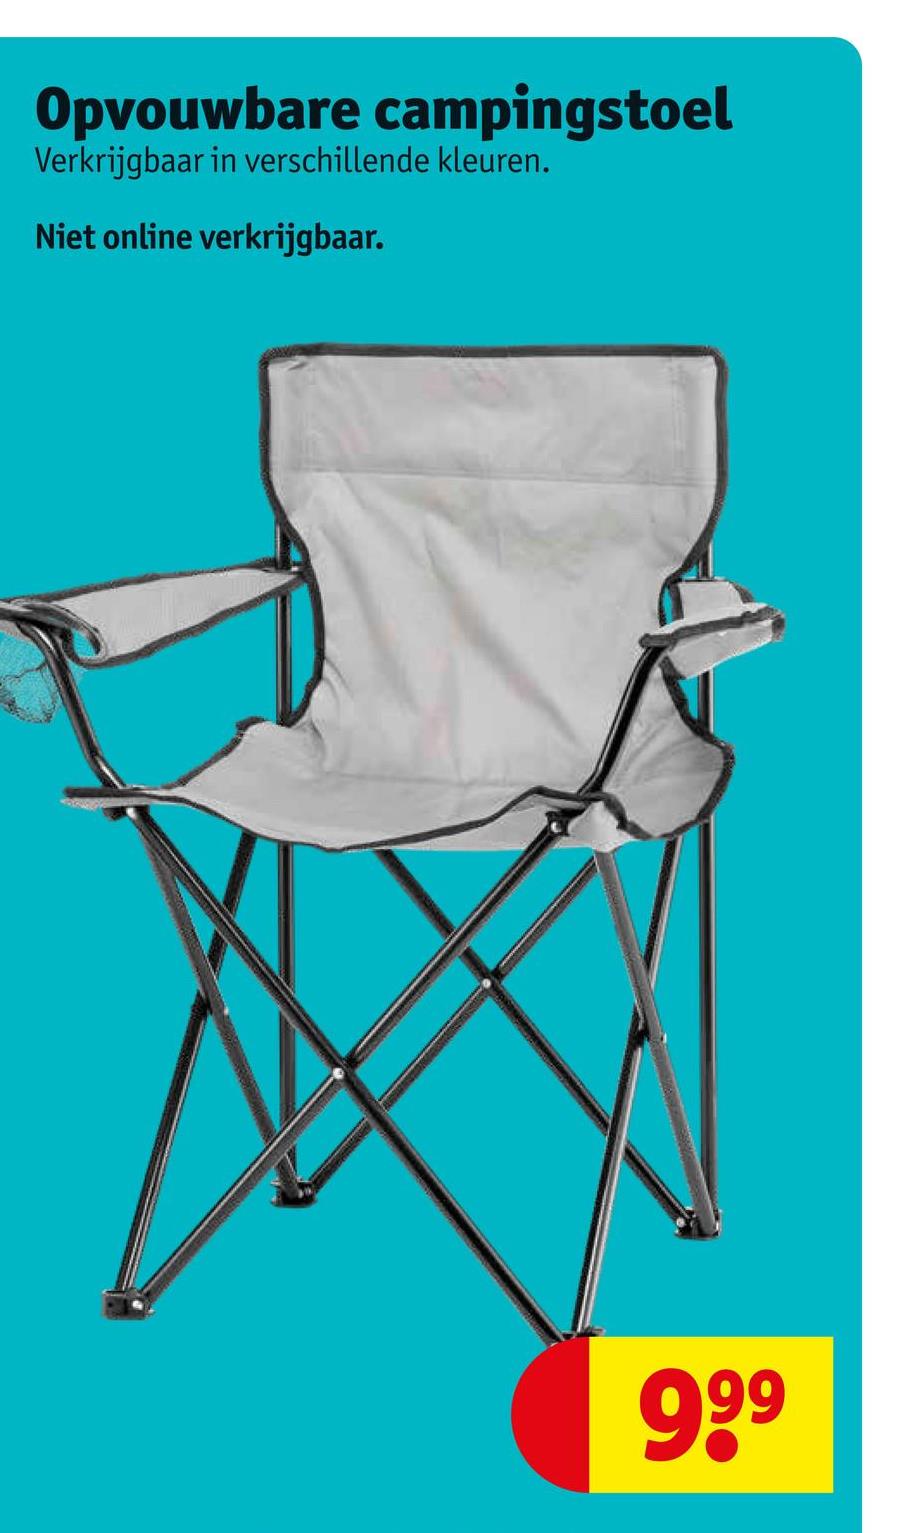 Opvouwbare campingstoel
Verkrijgbaar in verschillende kleuren.
Niet online verkrijgbaar.
9.9⁹